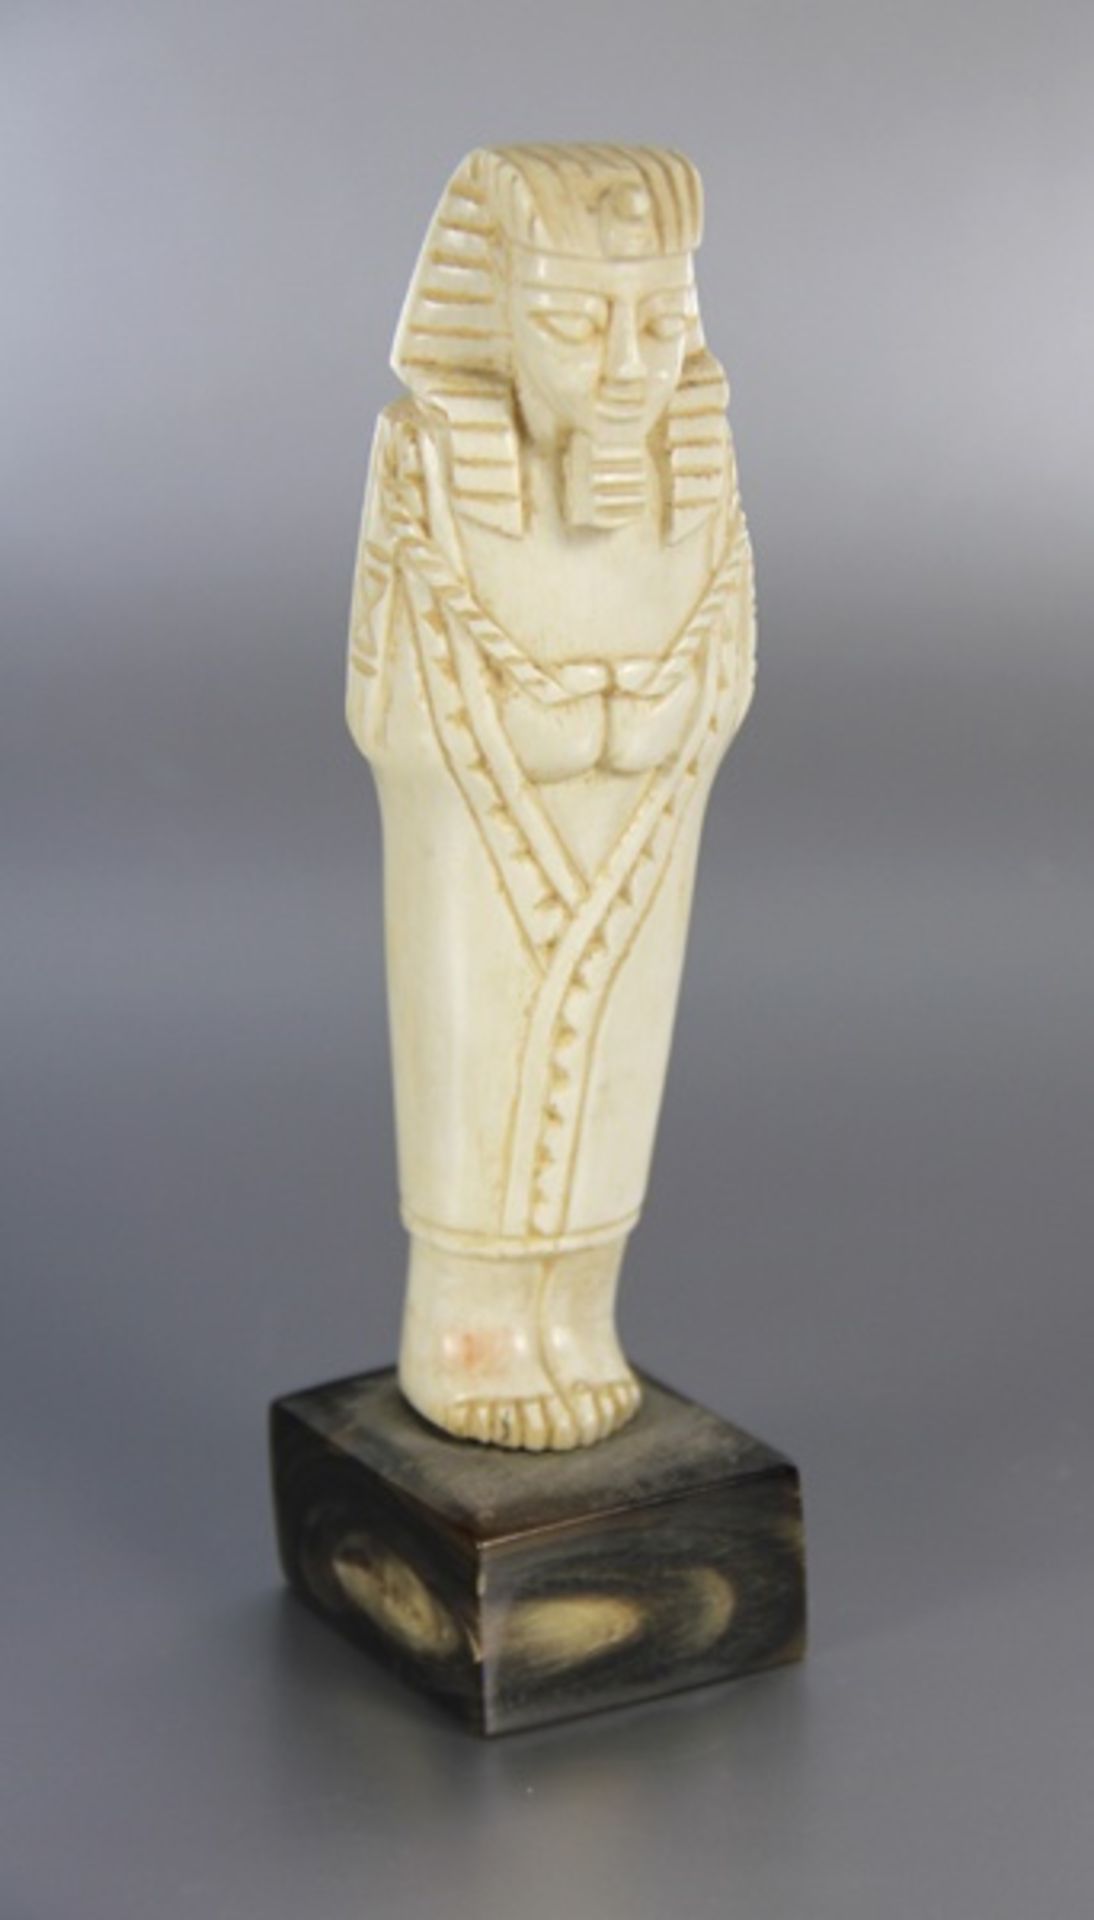 Pharaonen-Skulpturvor 1943, Elfenbein, geschnitzte Skulptur eines stehenden Pharaos oder Ägypters,